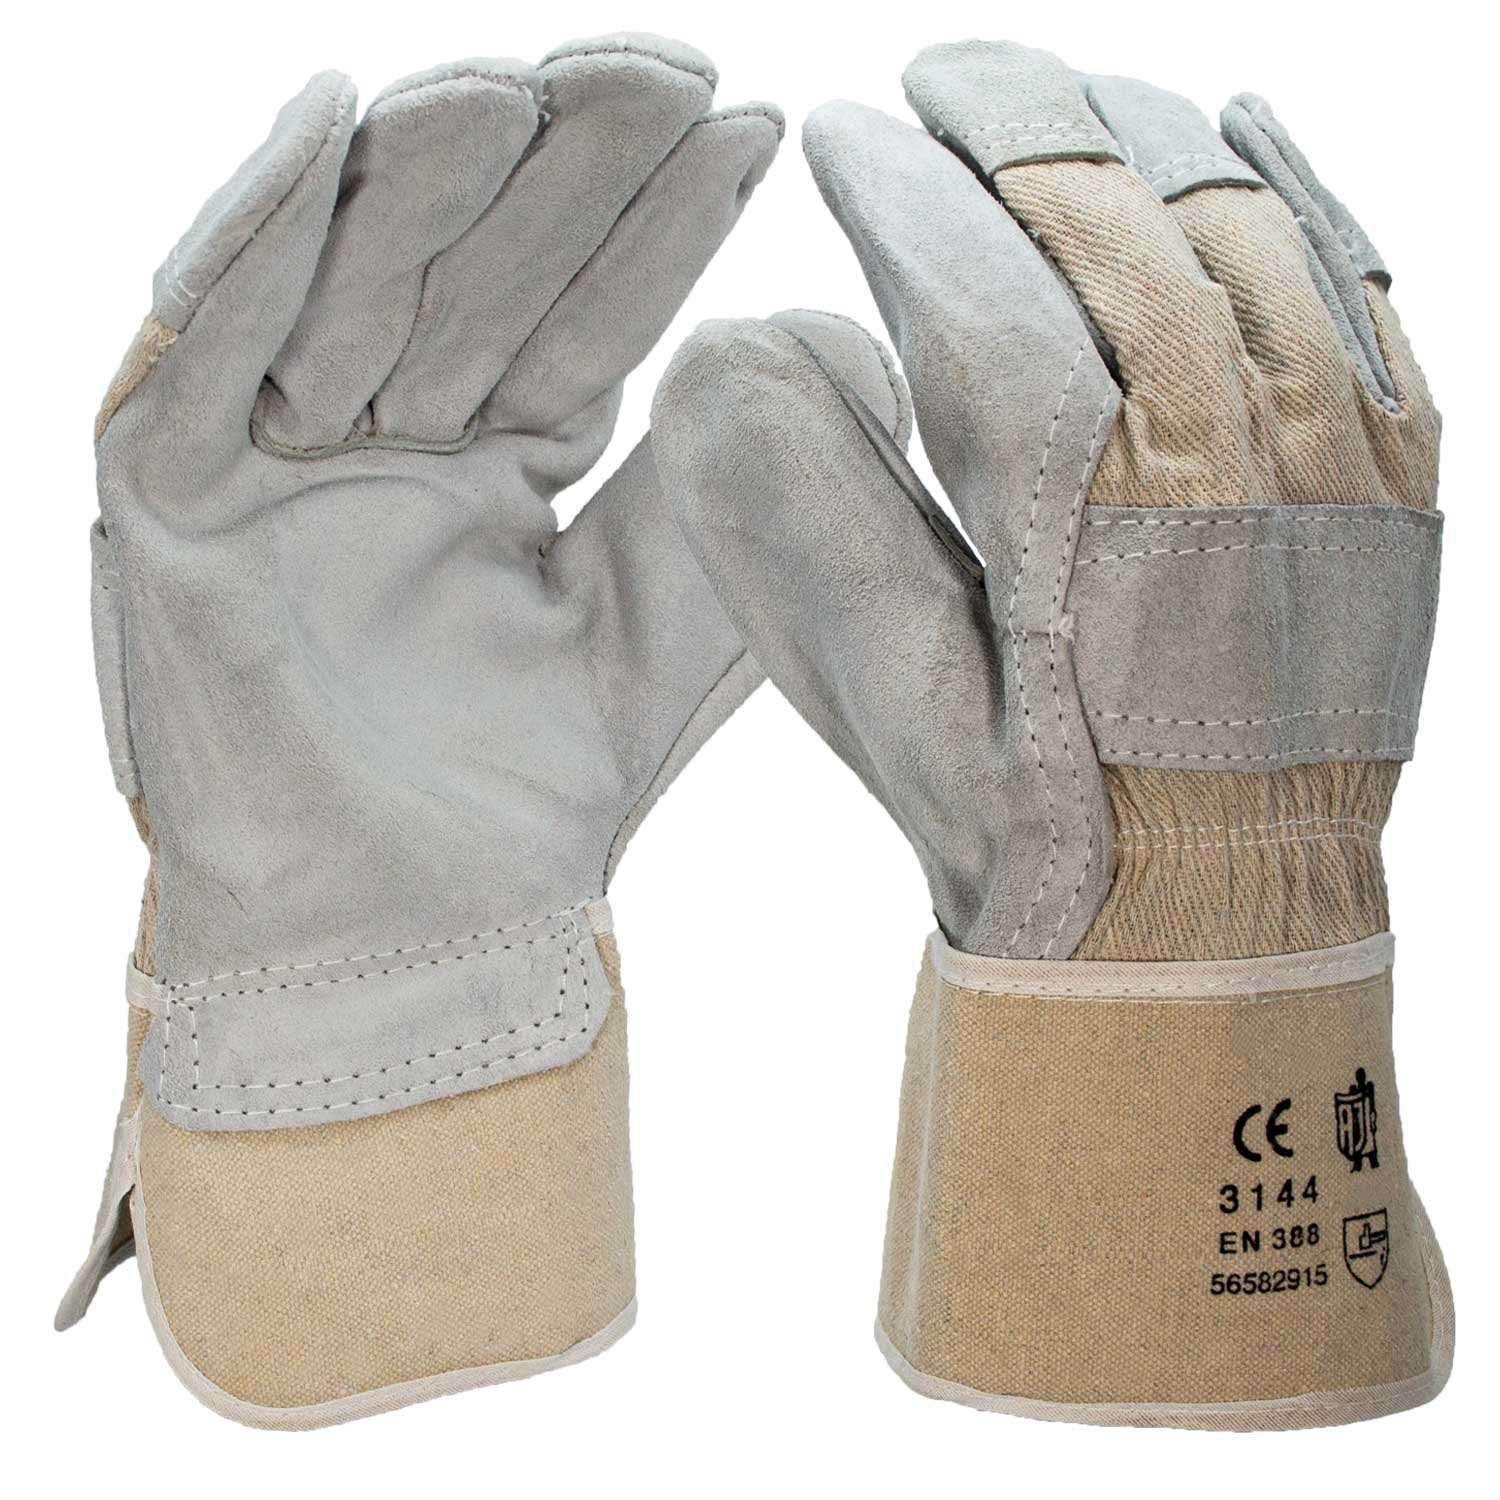 Jungfleisch Arbeitshandschuhe Montage-Handschuhe EN 388 Rindkernspaltleder Handschuhe für Bauarbeiten, Montage, Garten